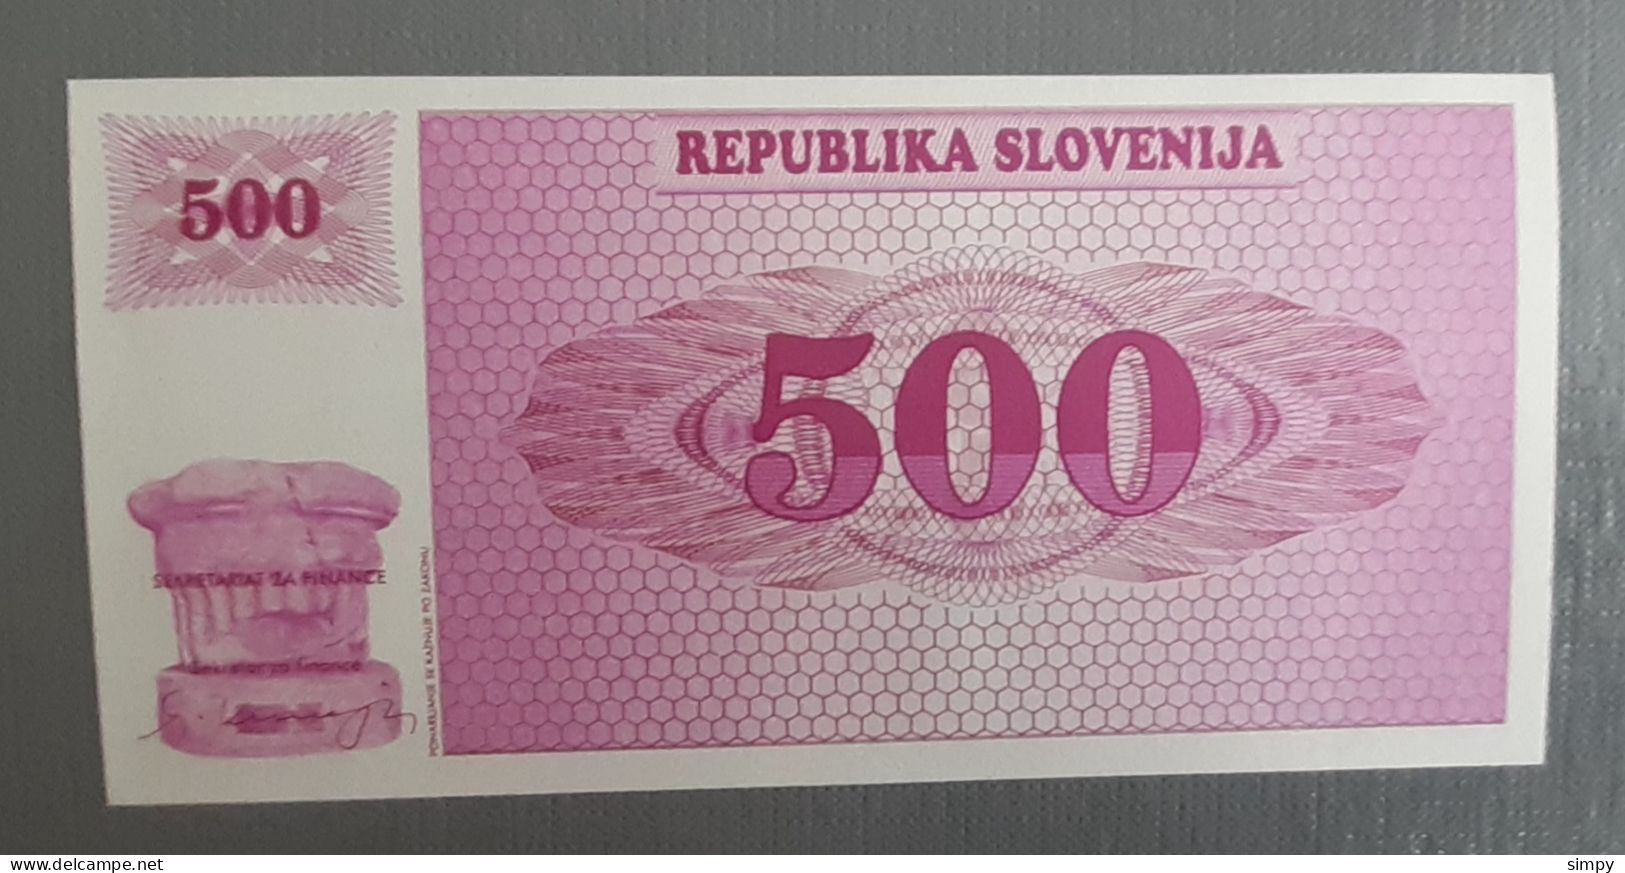 Slovenia 500 Tolarjev 1990 Prefix AB UNC - Slowenien